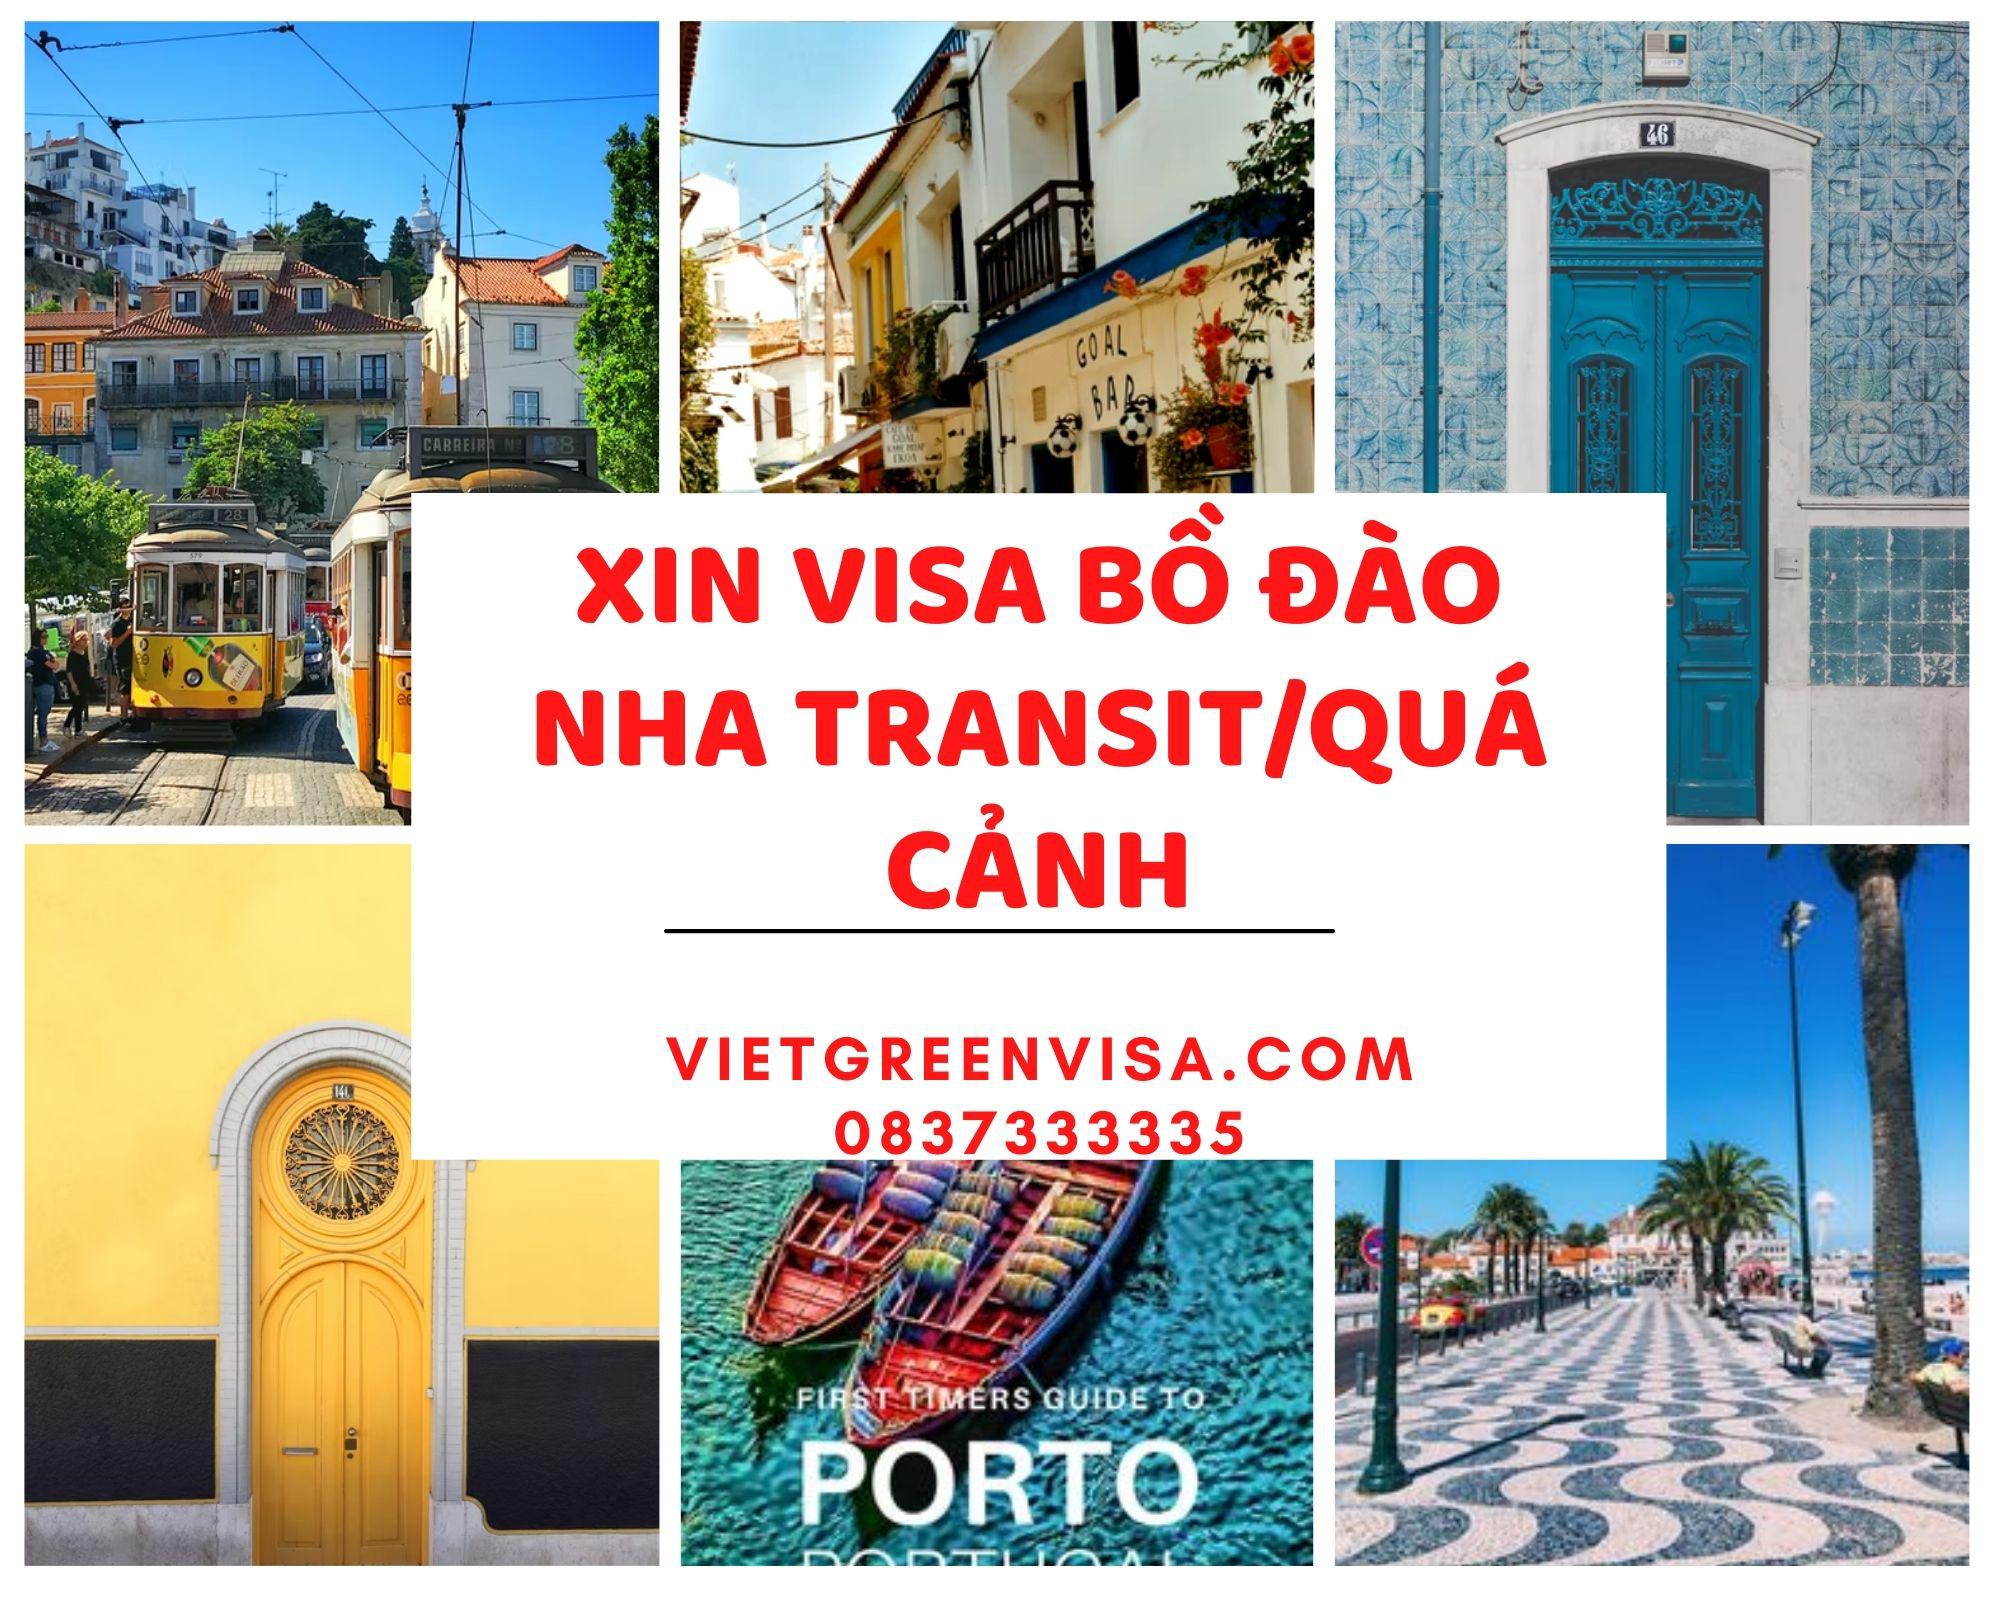 Dịch vụ xin visa quá cảnh qua Bồ Đào Nha, visa Bồ Đào Nha transit uy tín